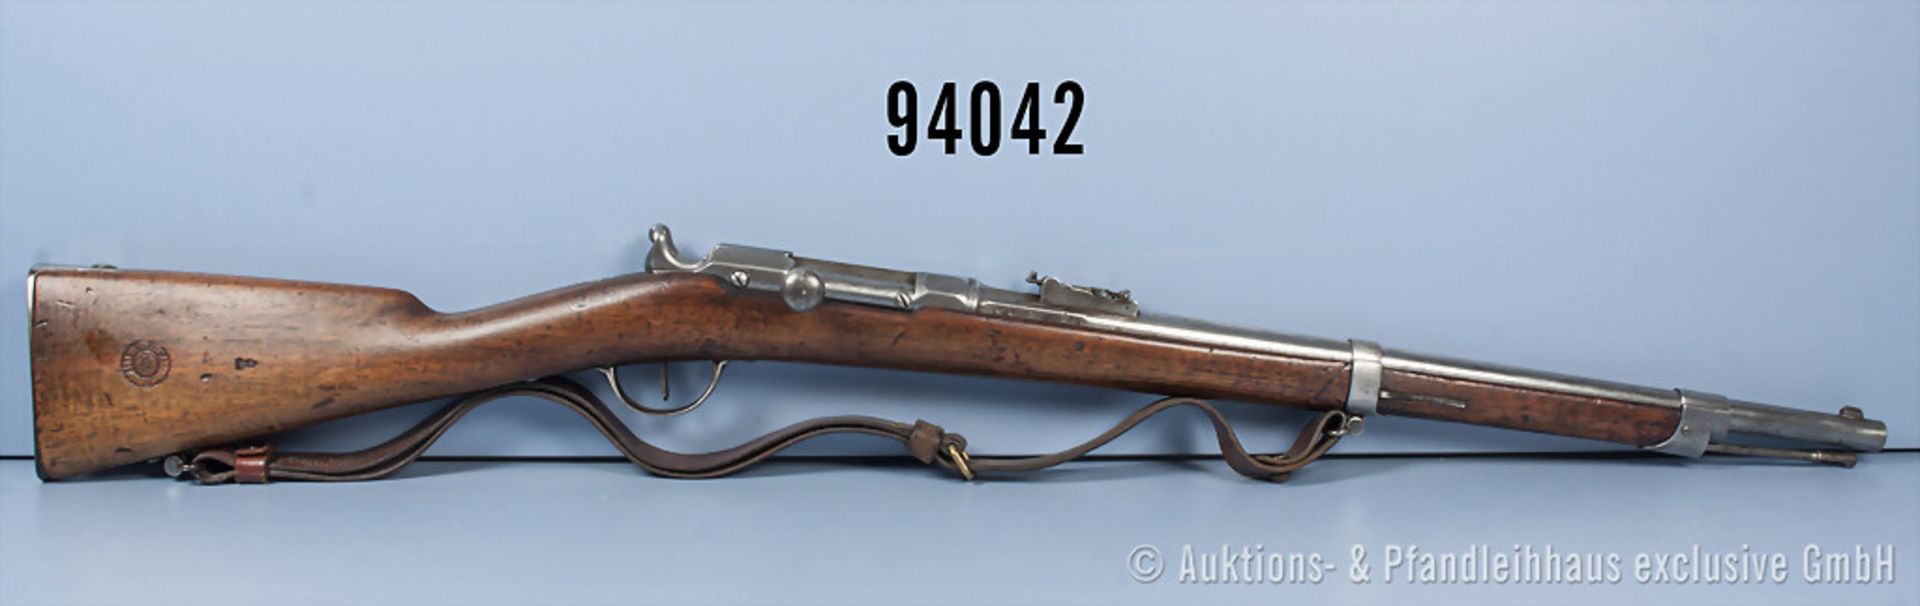 Chassepot-Karabiner (gekürzt), n. A. d. E. zusammengebaut aus Beutewaffen aus dem Deutsch-